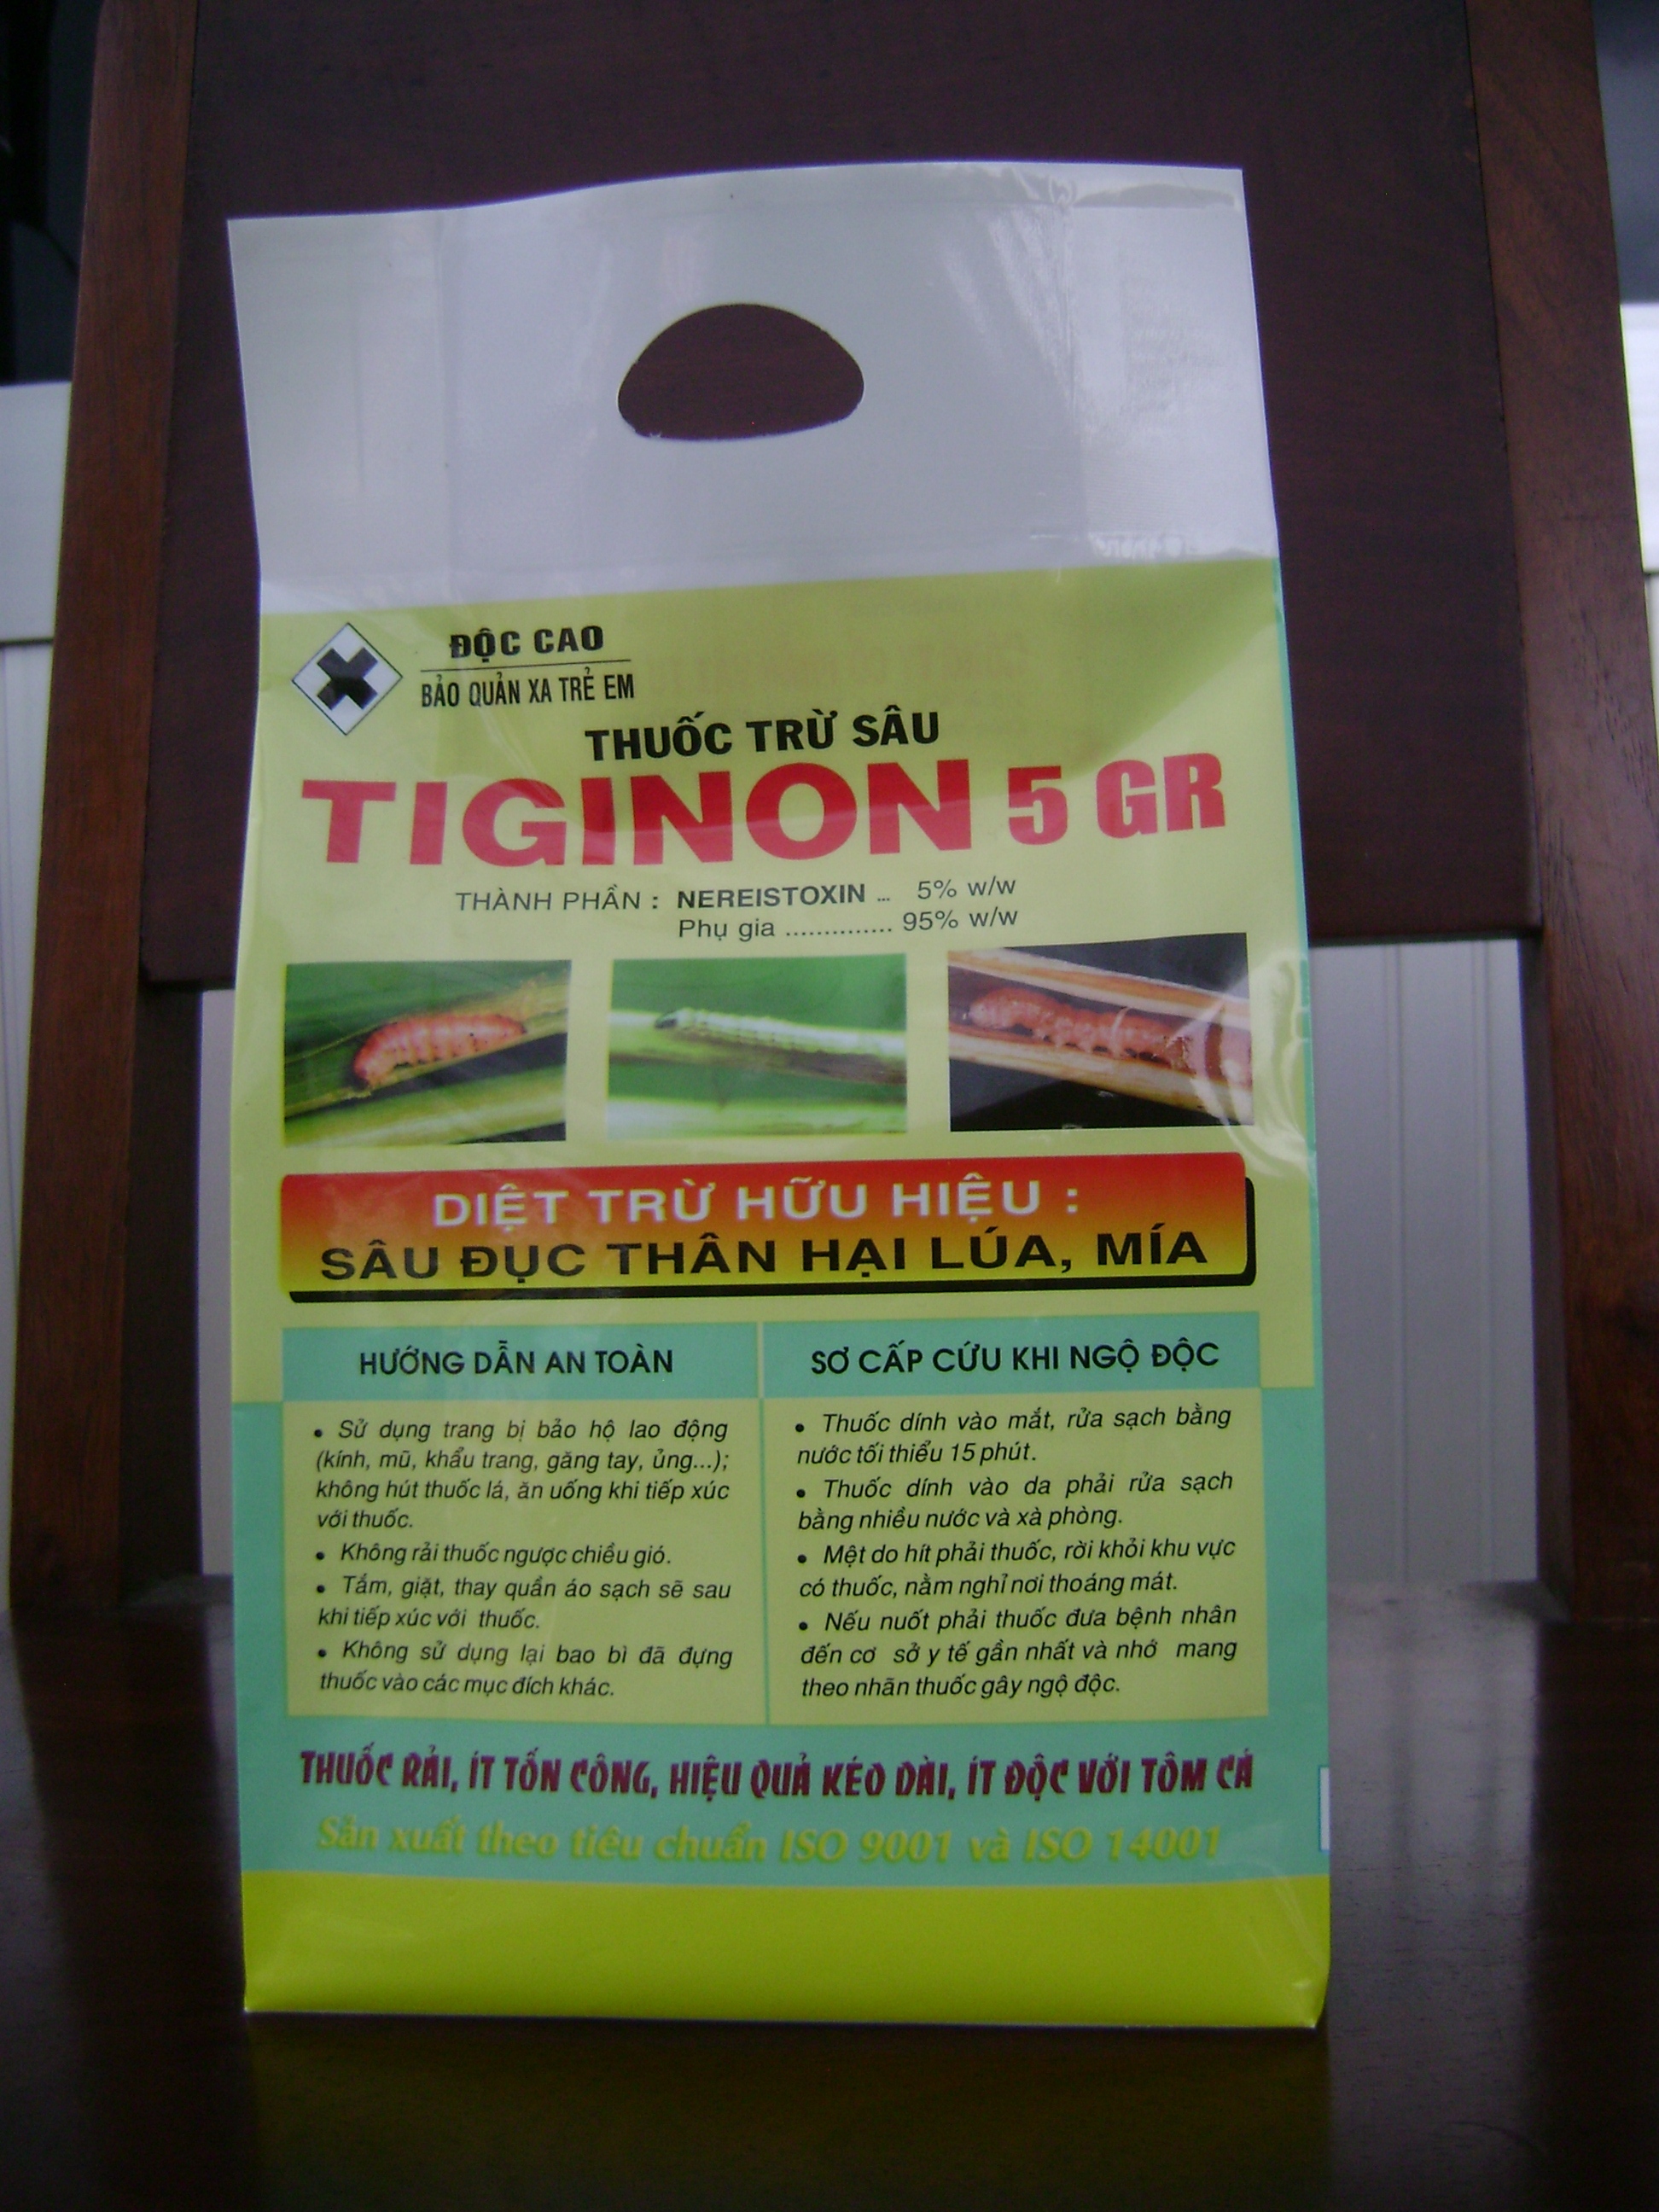 TIGINON 5 GR - Thuốc Trừ Sâu Tigicam - Công Ty Cổ Phần Vật Tư Nông Nghiệp Tiền Giang